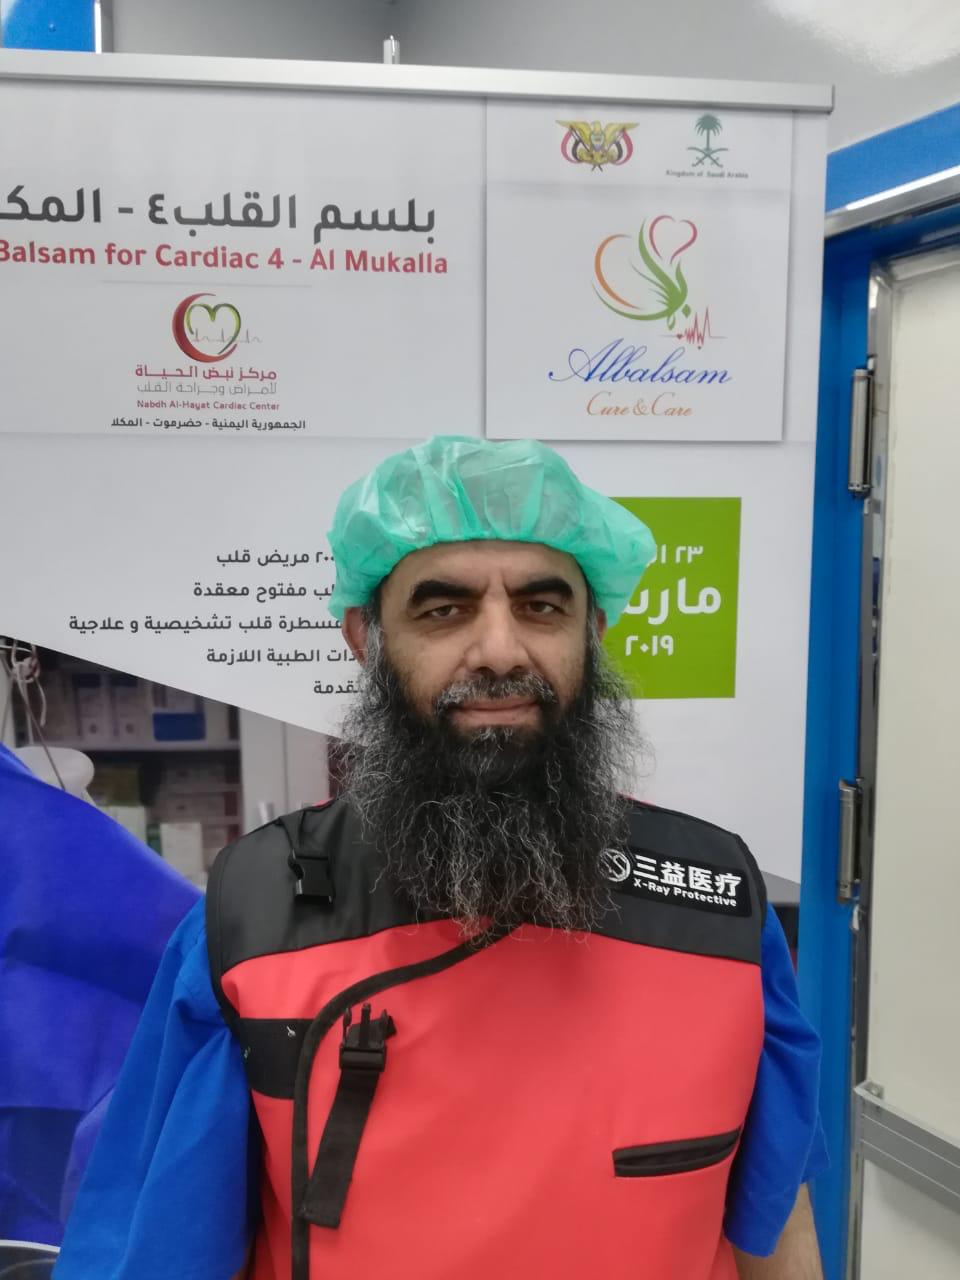 في اللحظة الحاسمة.. فريق البلسم يتدخل جراحياً  لإنقاذ حياة يمني